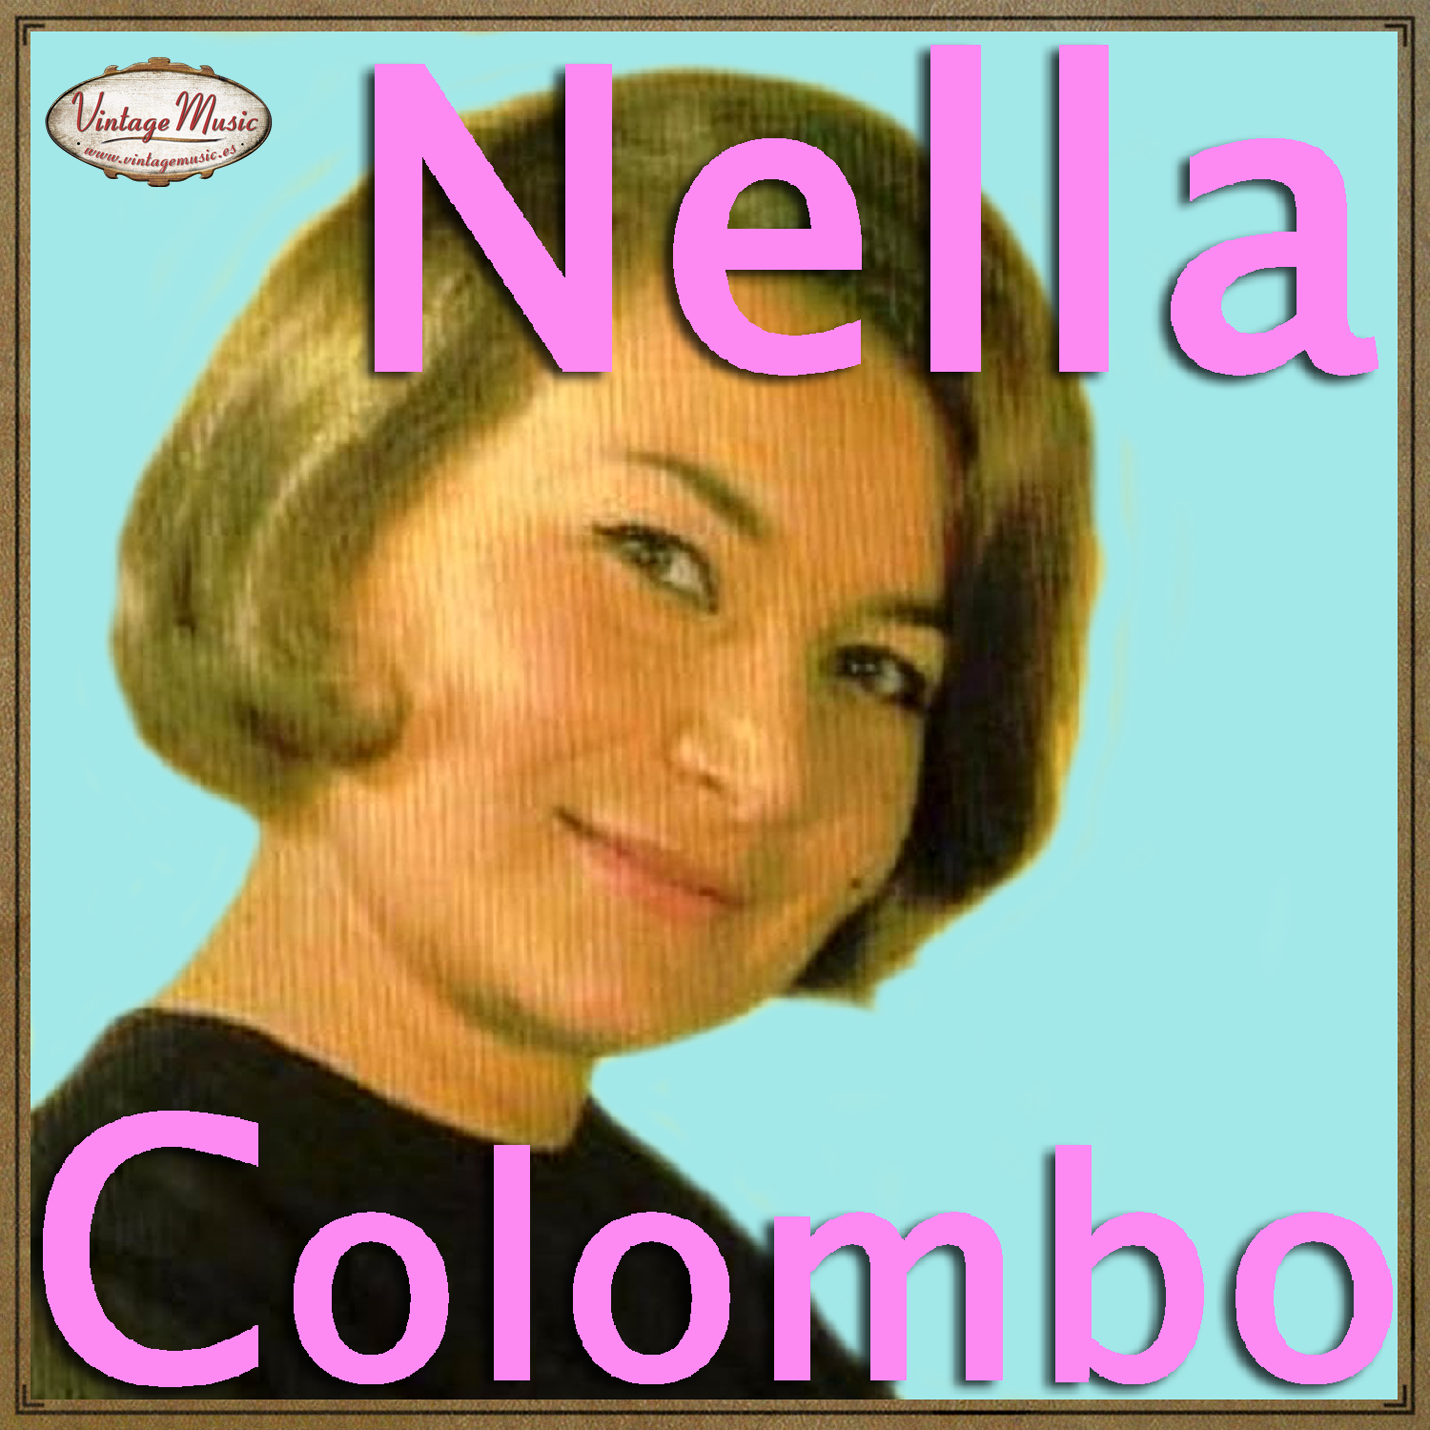 Nella Colombo (Colección Vintage Music)